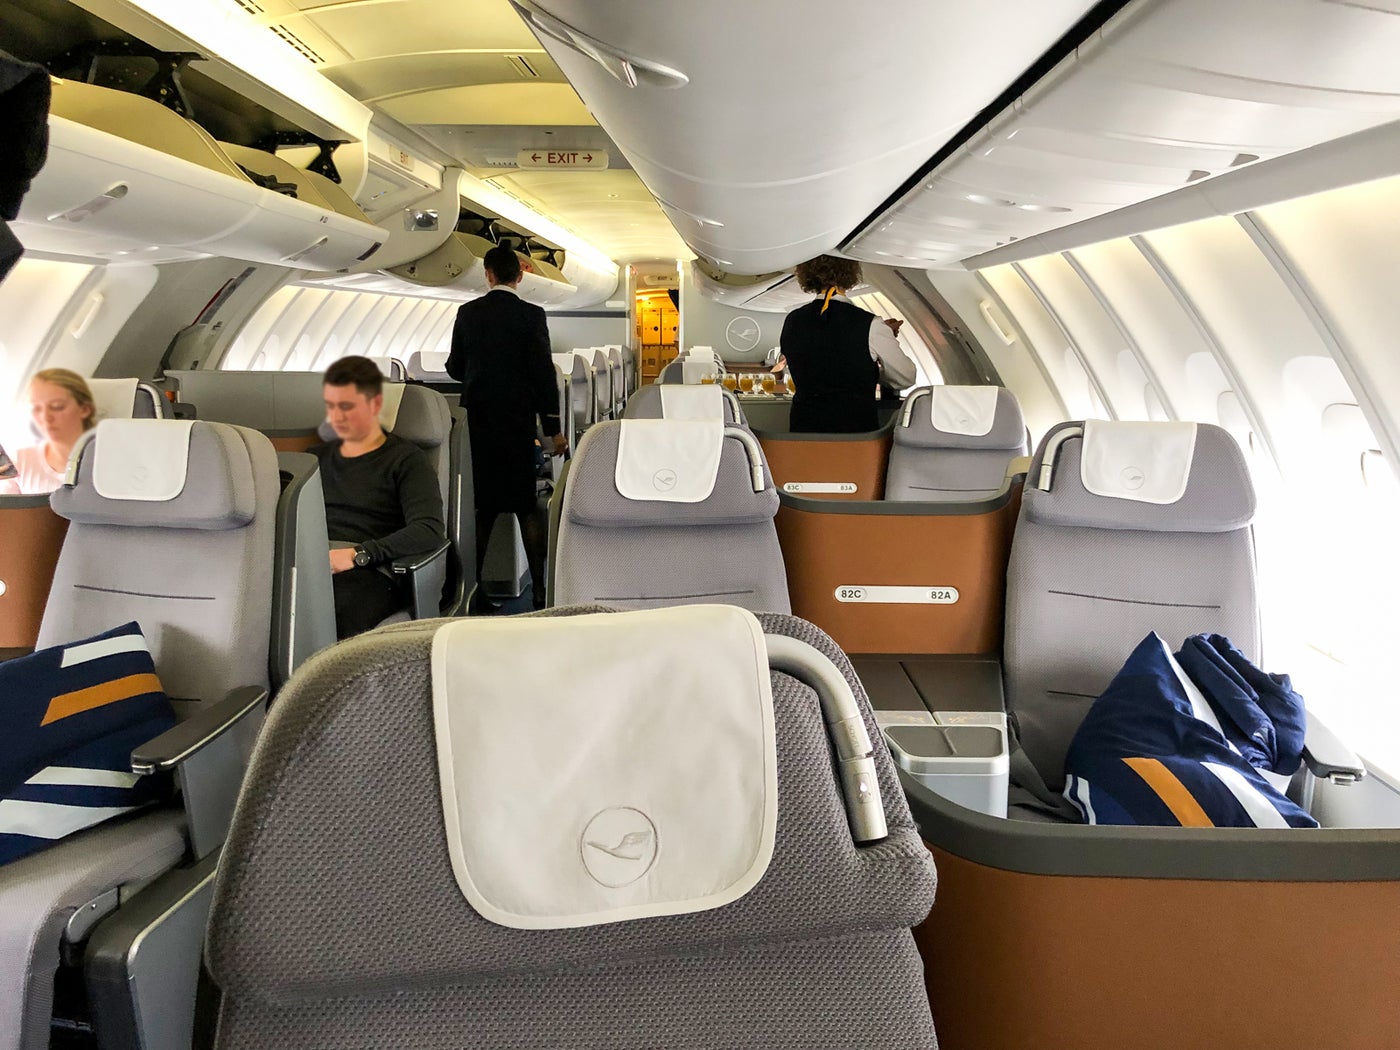 Lufthansa Business Class 7478 Review, JFK to Frankfurt